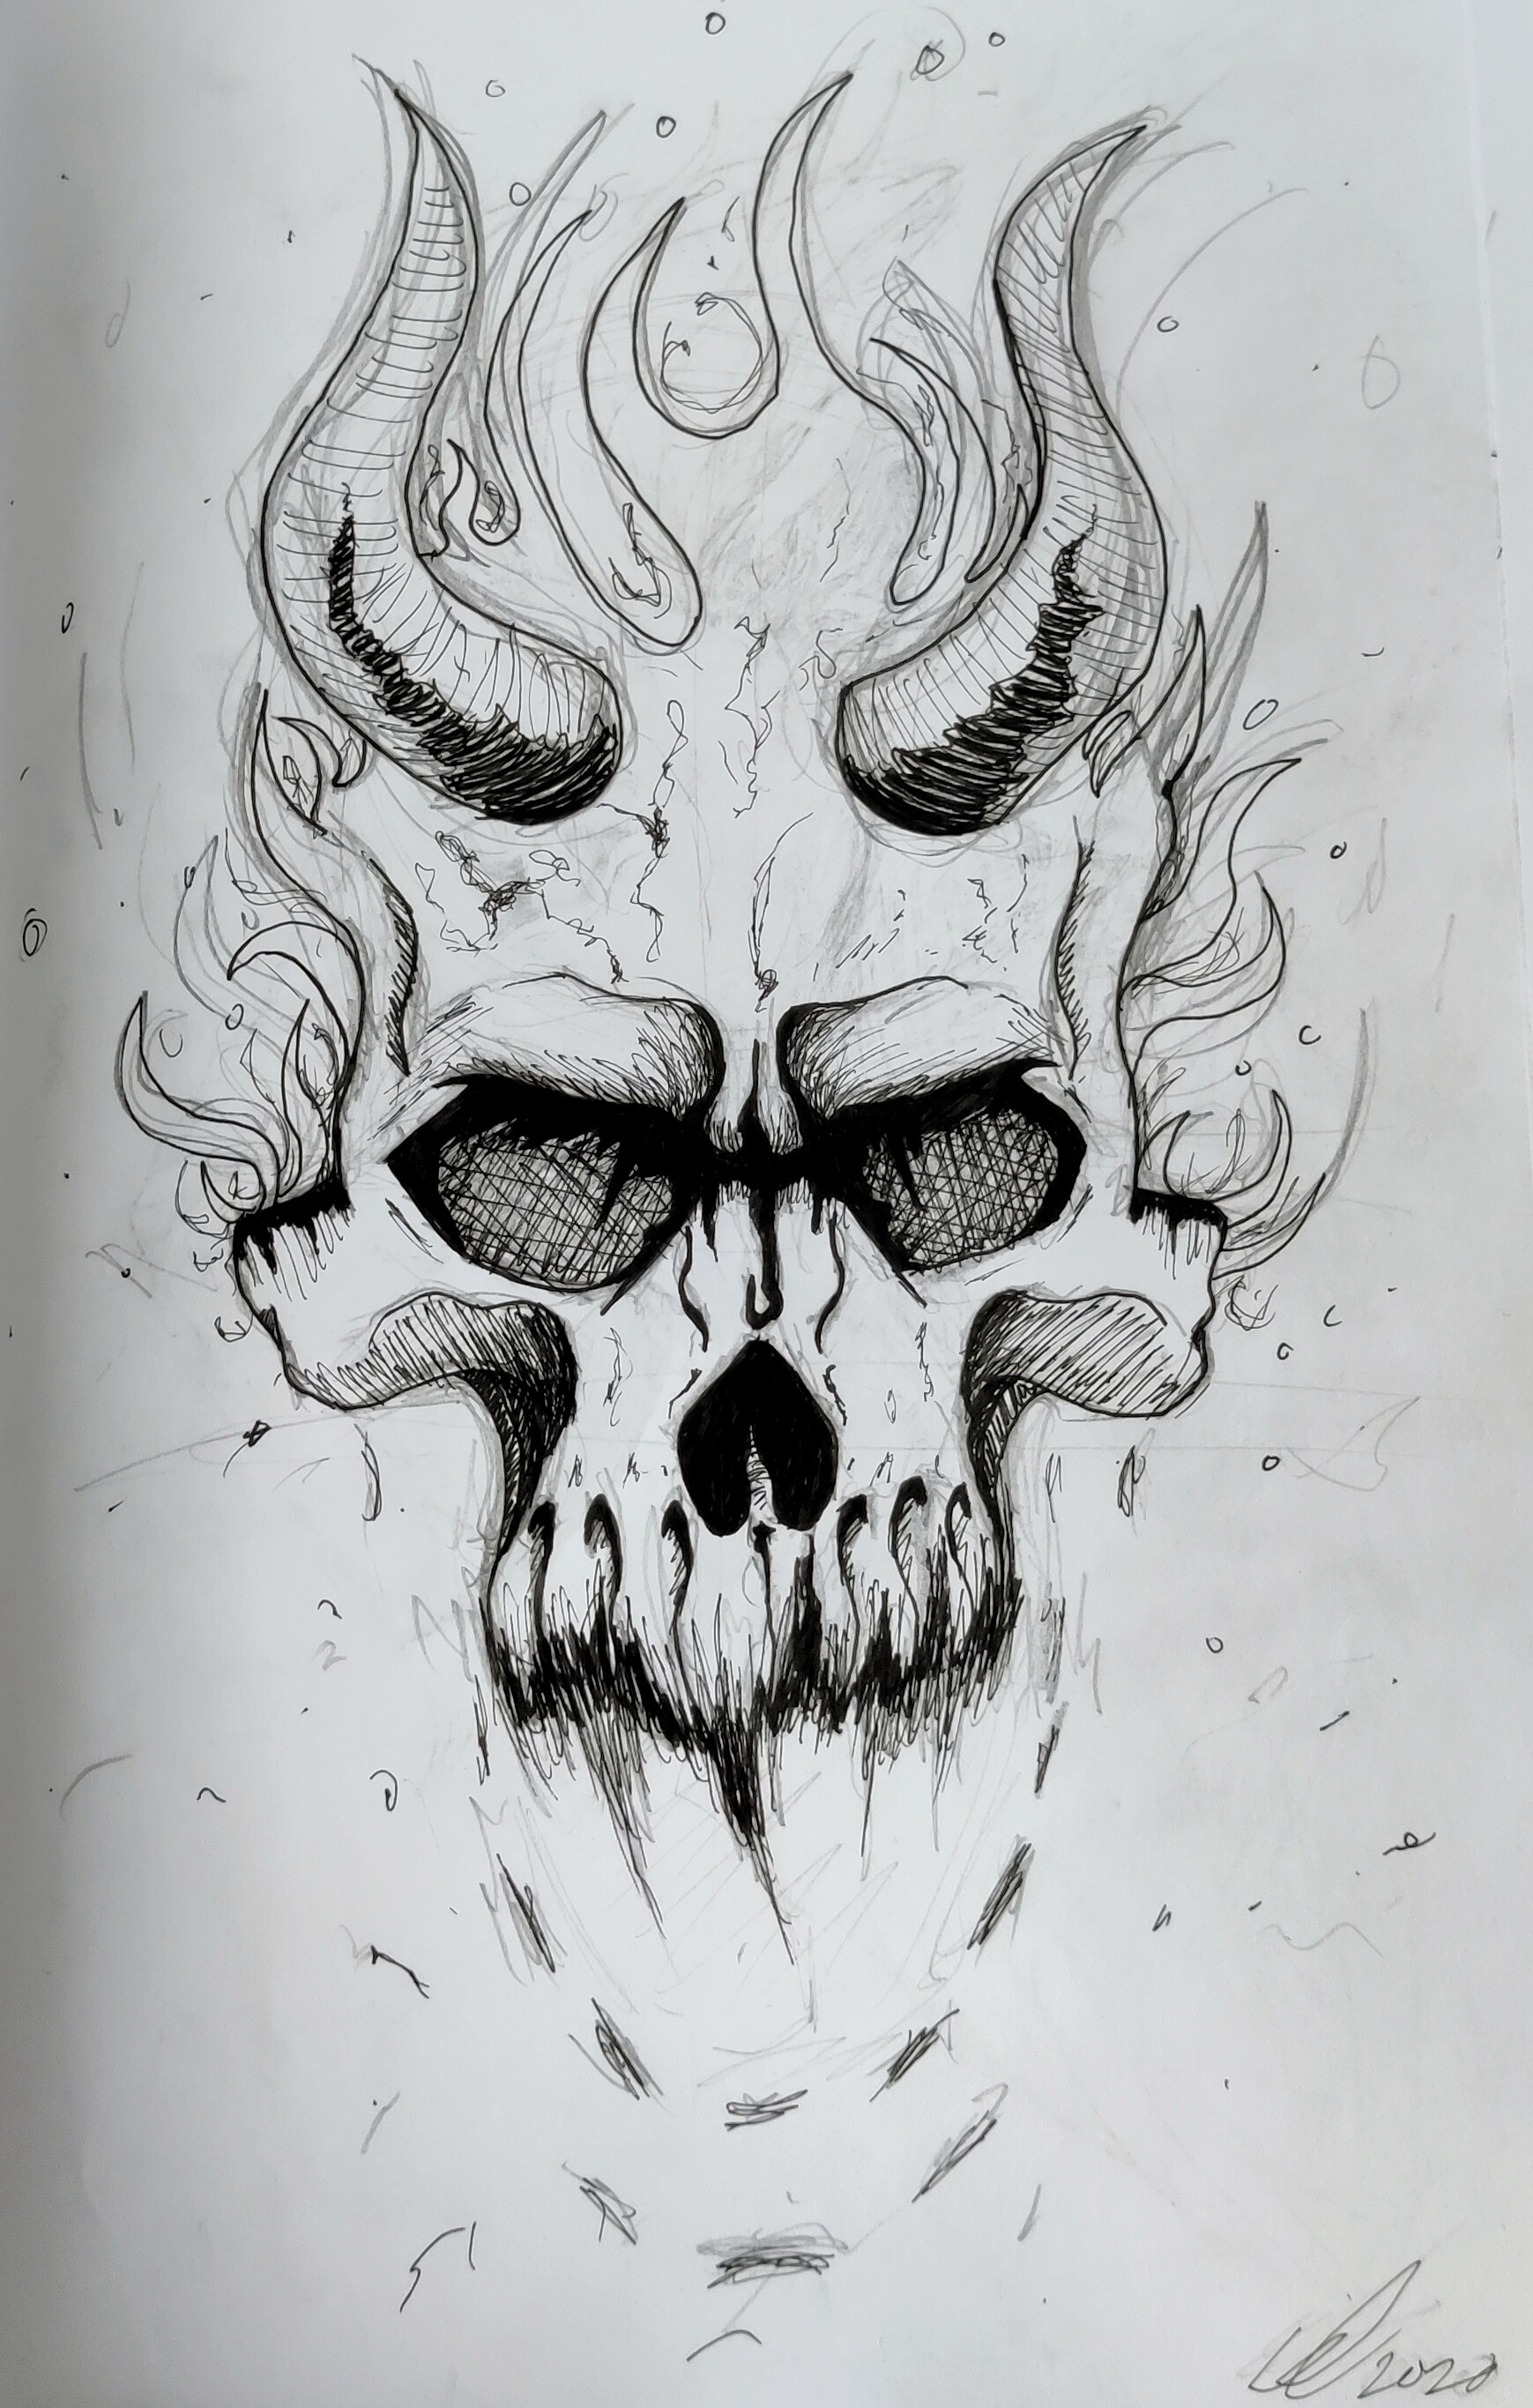 ArtStation - Skull on fire